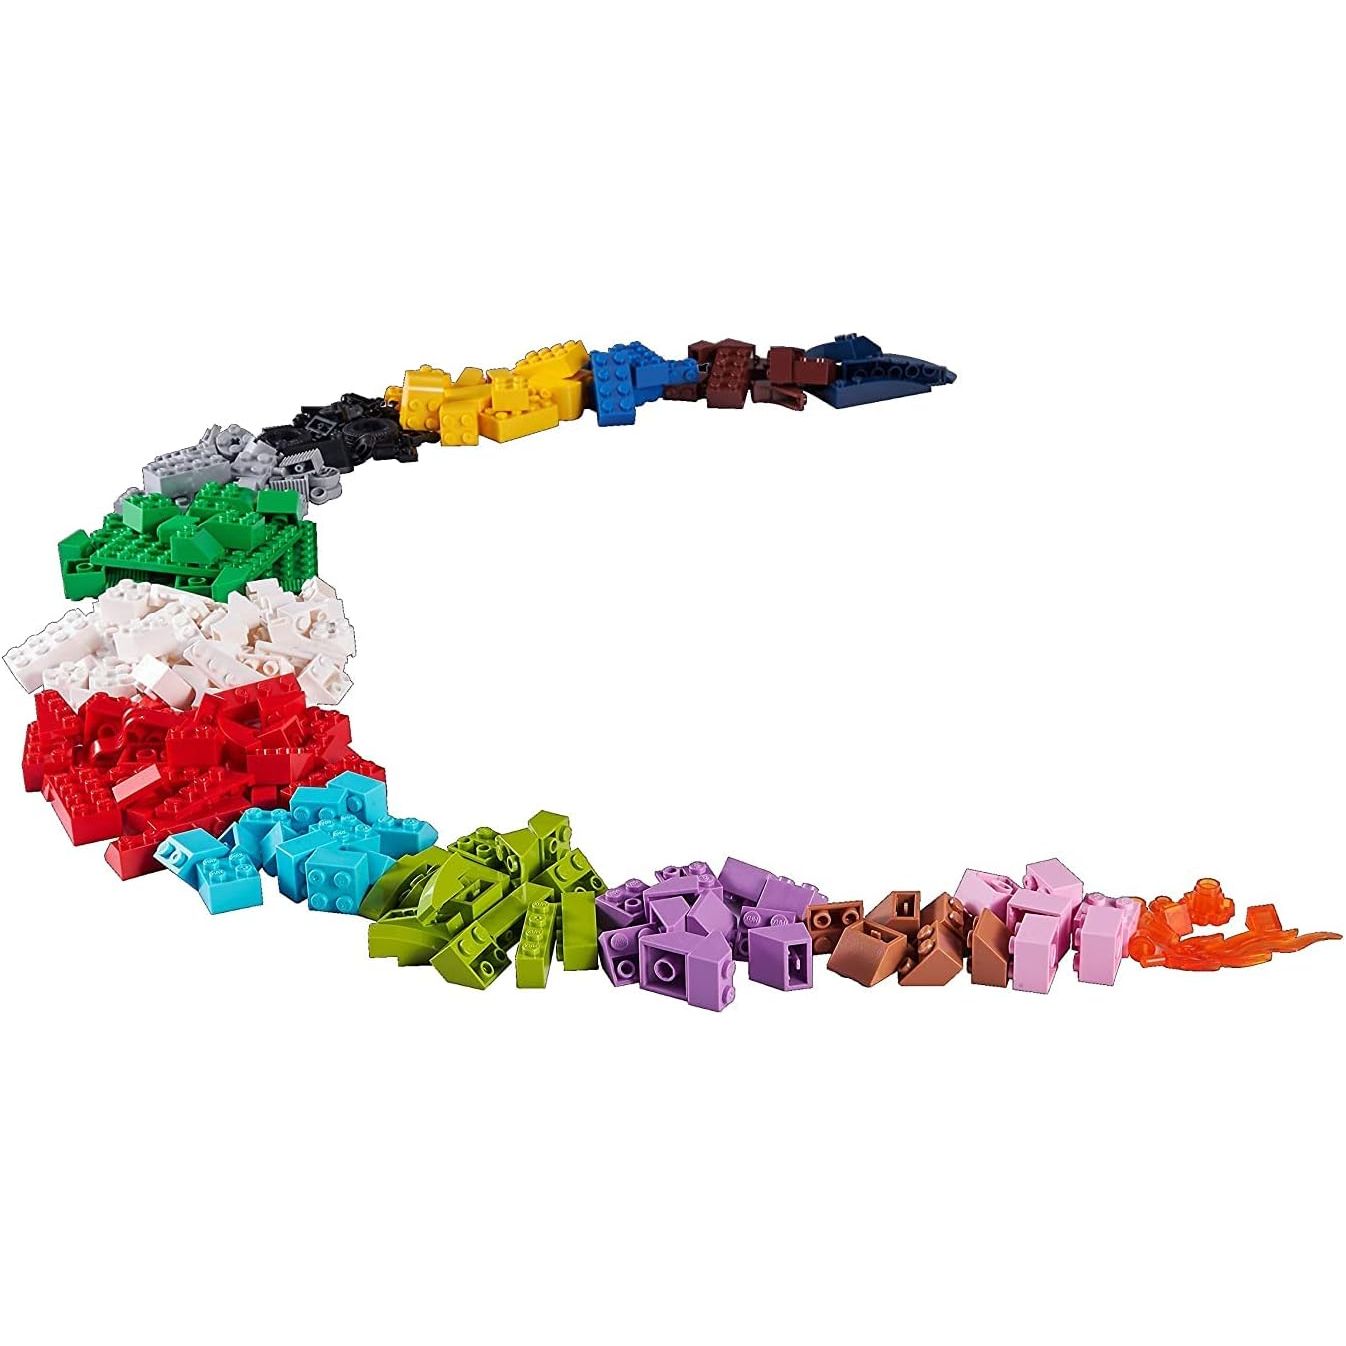 مجموعة مكعبات البناء ذات القيمة ماكس بيلد مور من زورو S002، 253 قطعة، متعددة الألوان